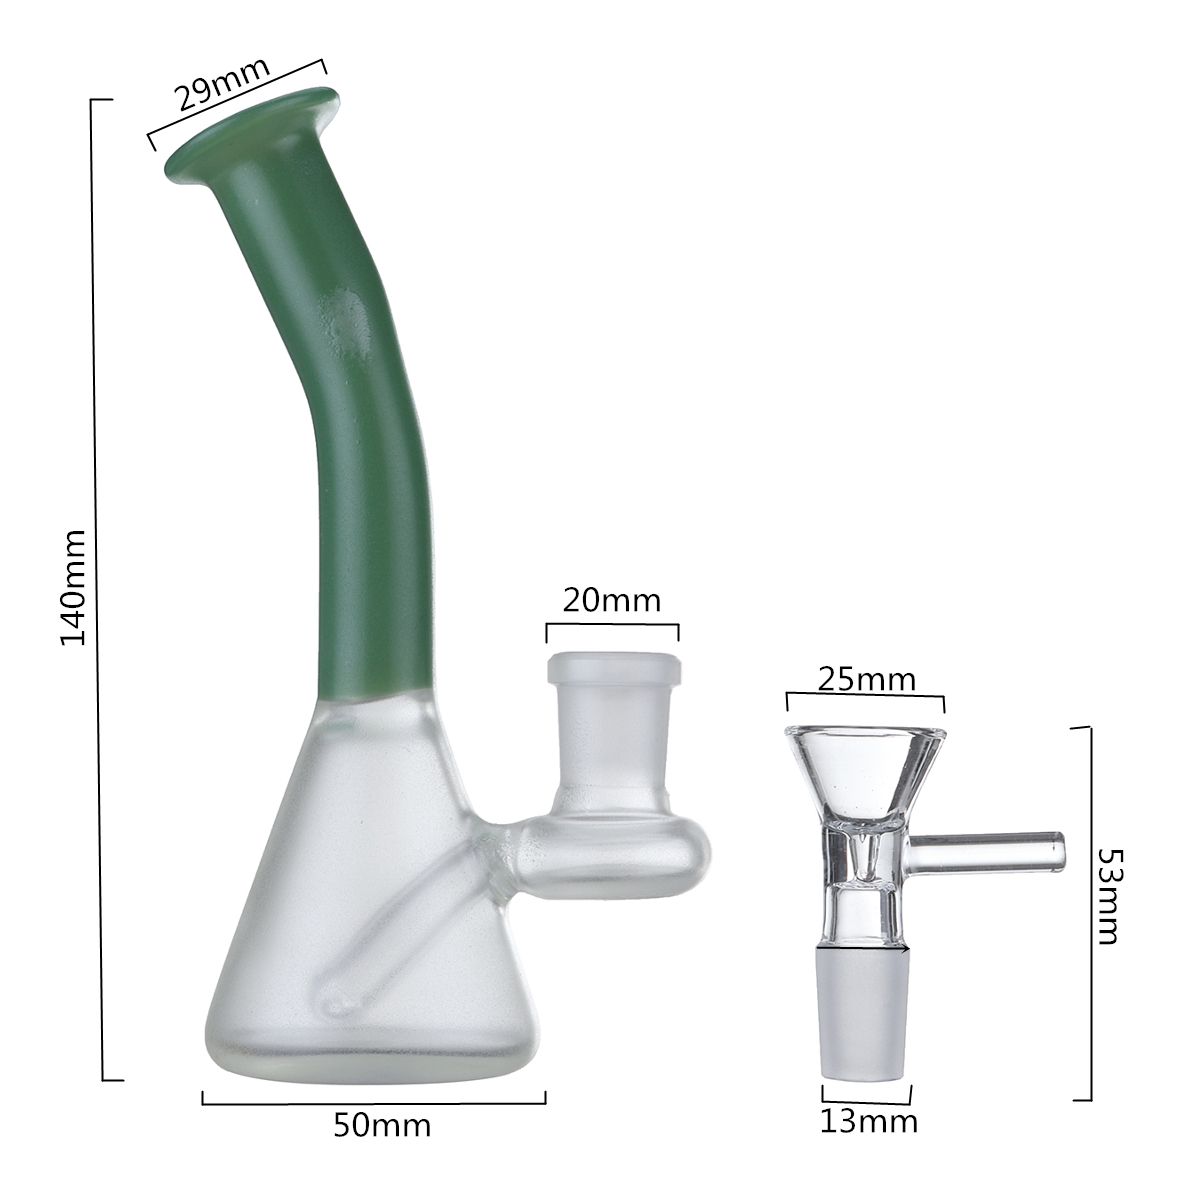 Luminous-H-ookah-Water-Glass-B-ong-Pipe-Glassware-1517058